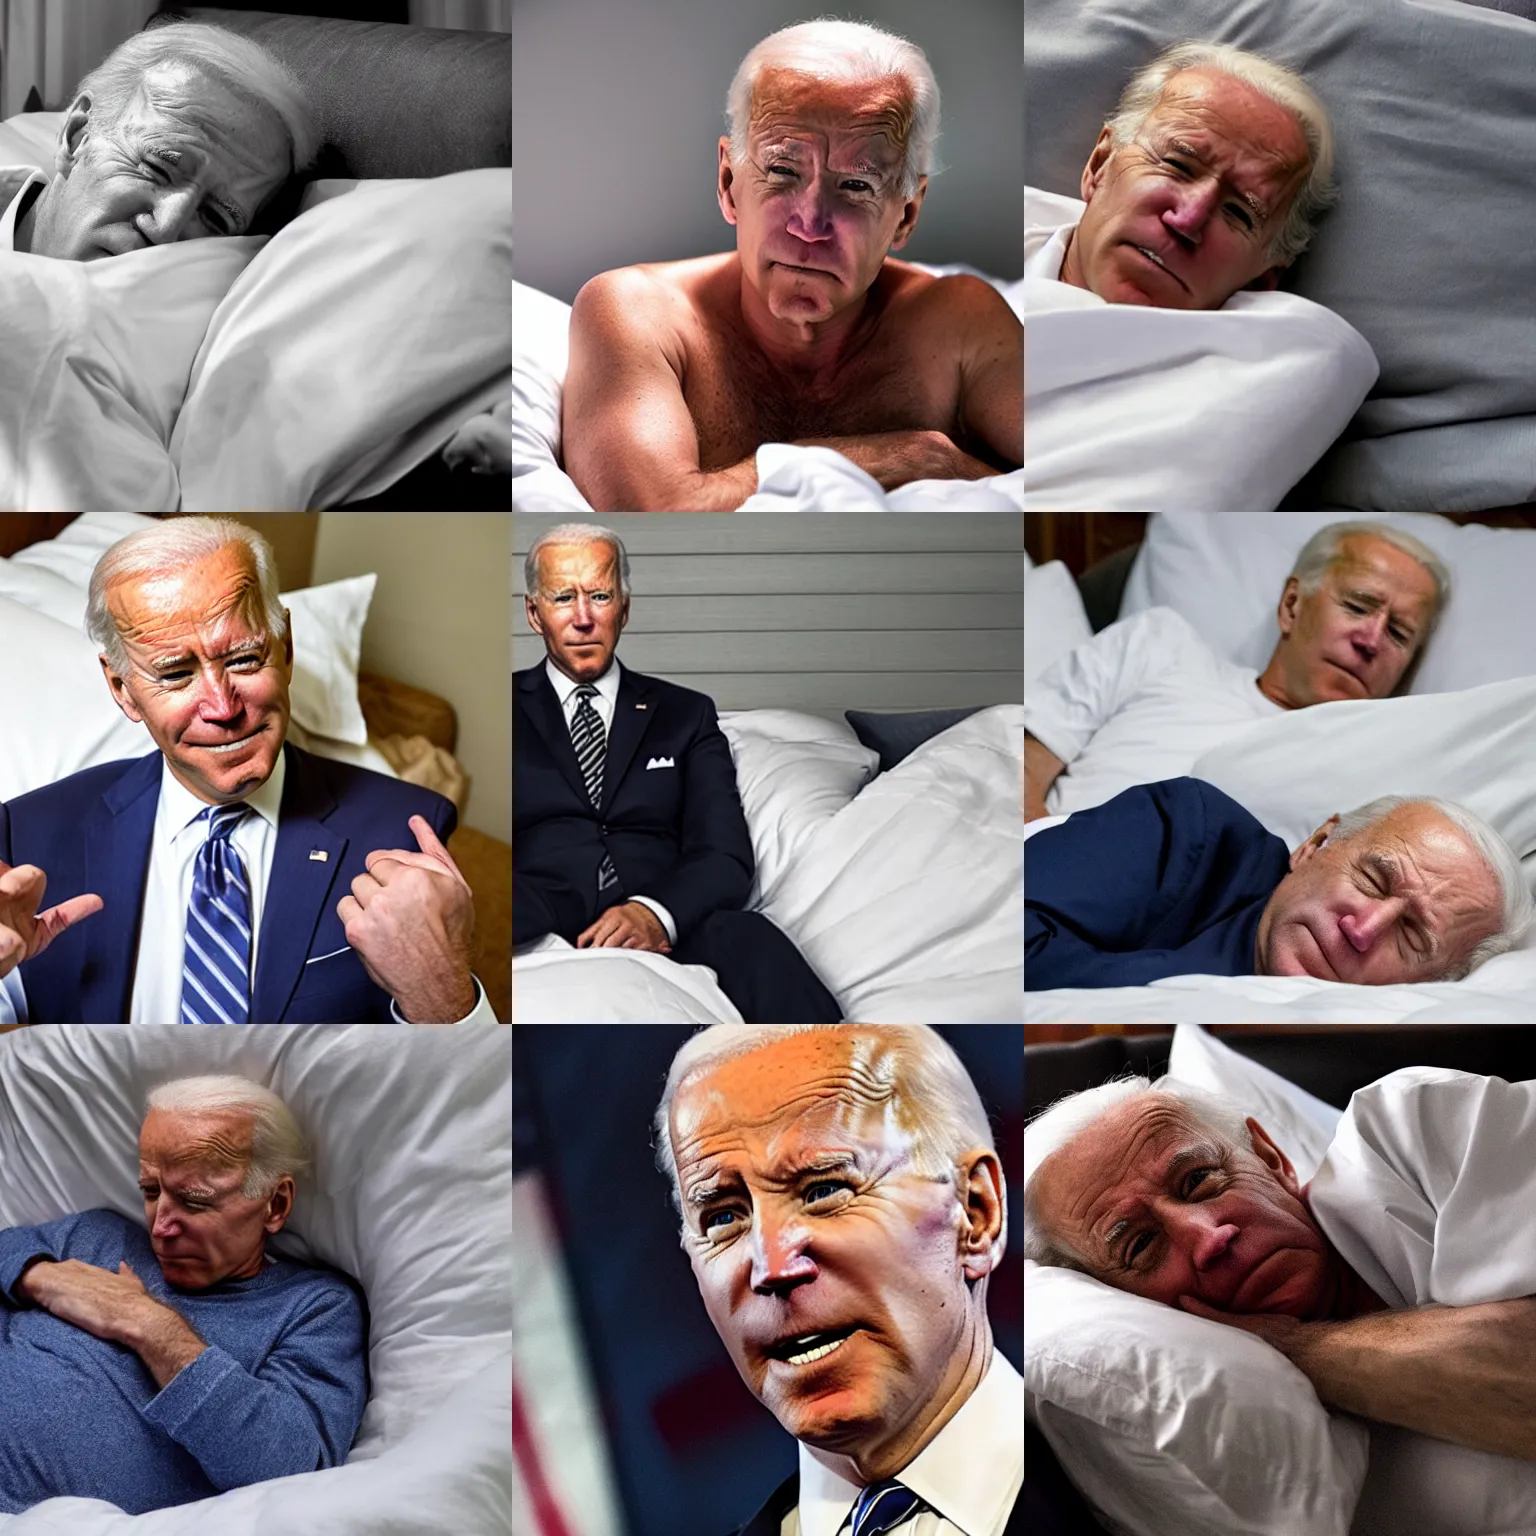 Prompt: photo of exhausted, sad, and weak joe biden in bed